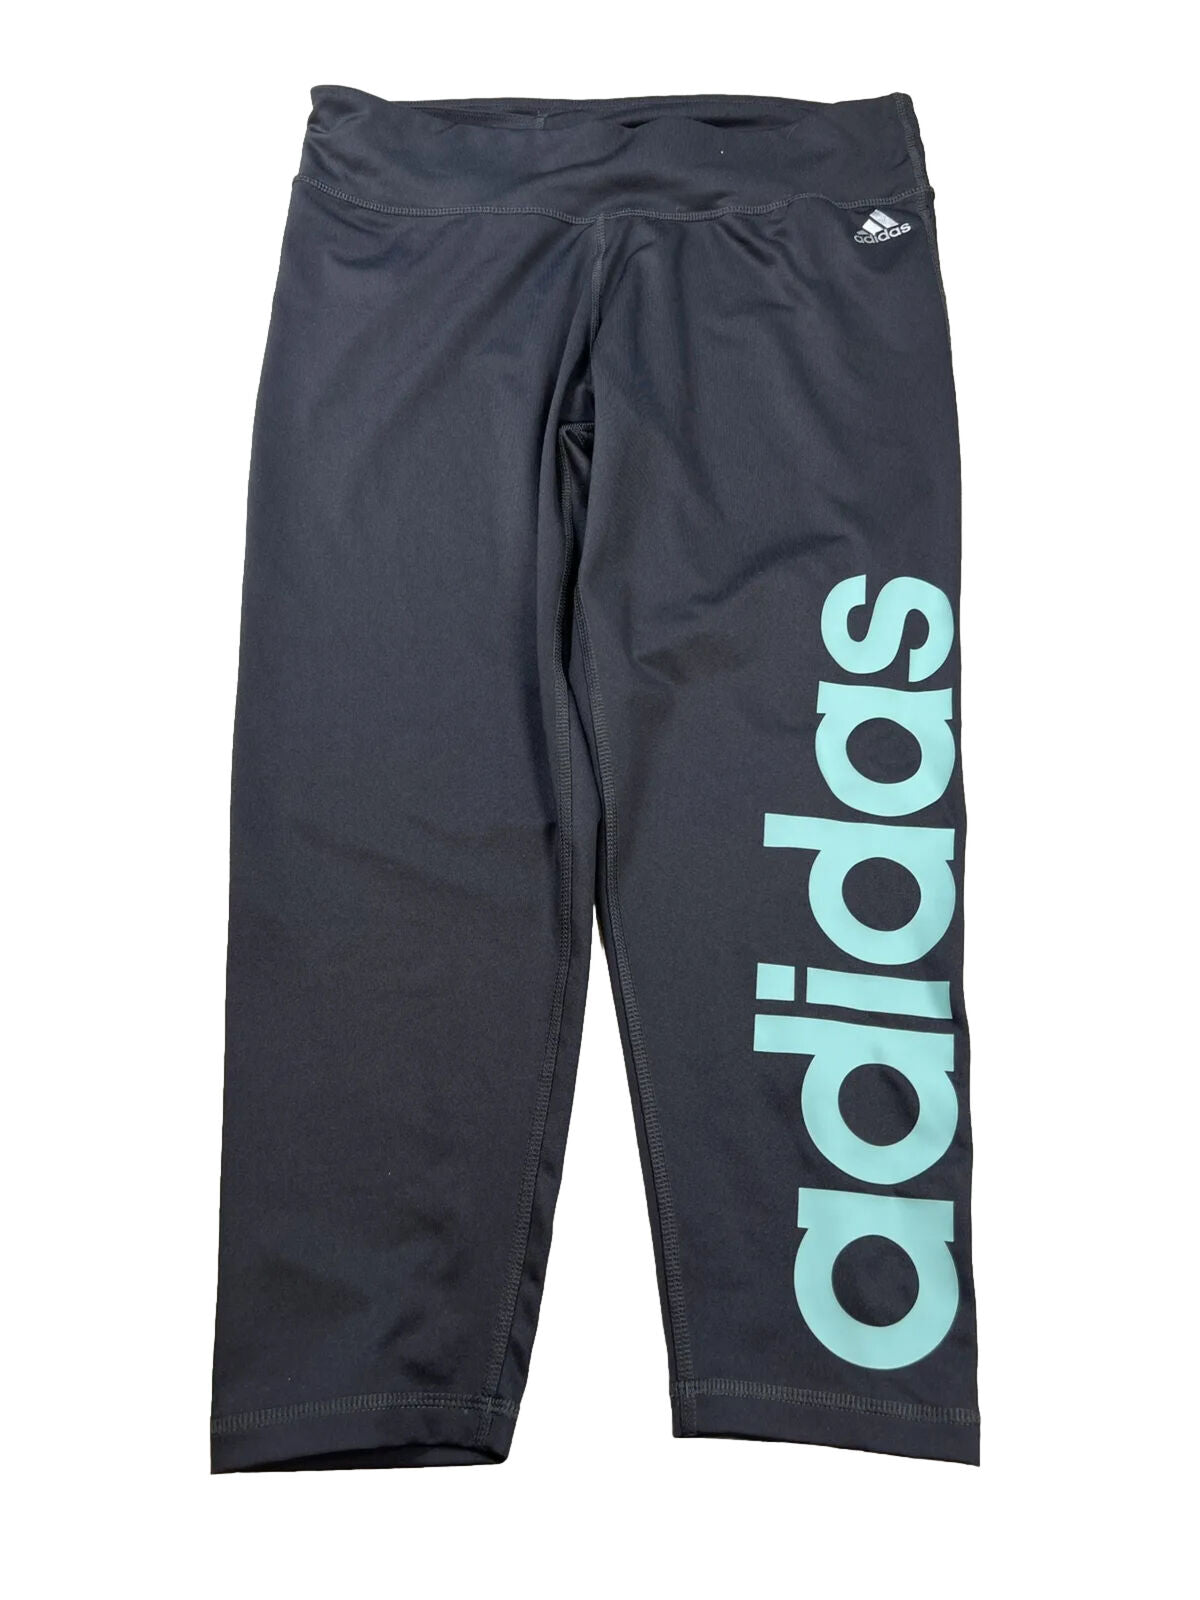 Adidas Pantalón corto deportivo Climalite gris para mujer - L